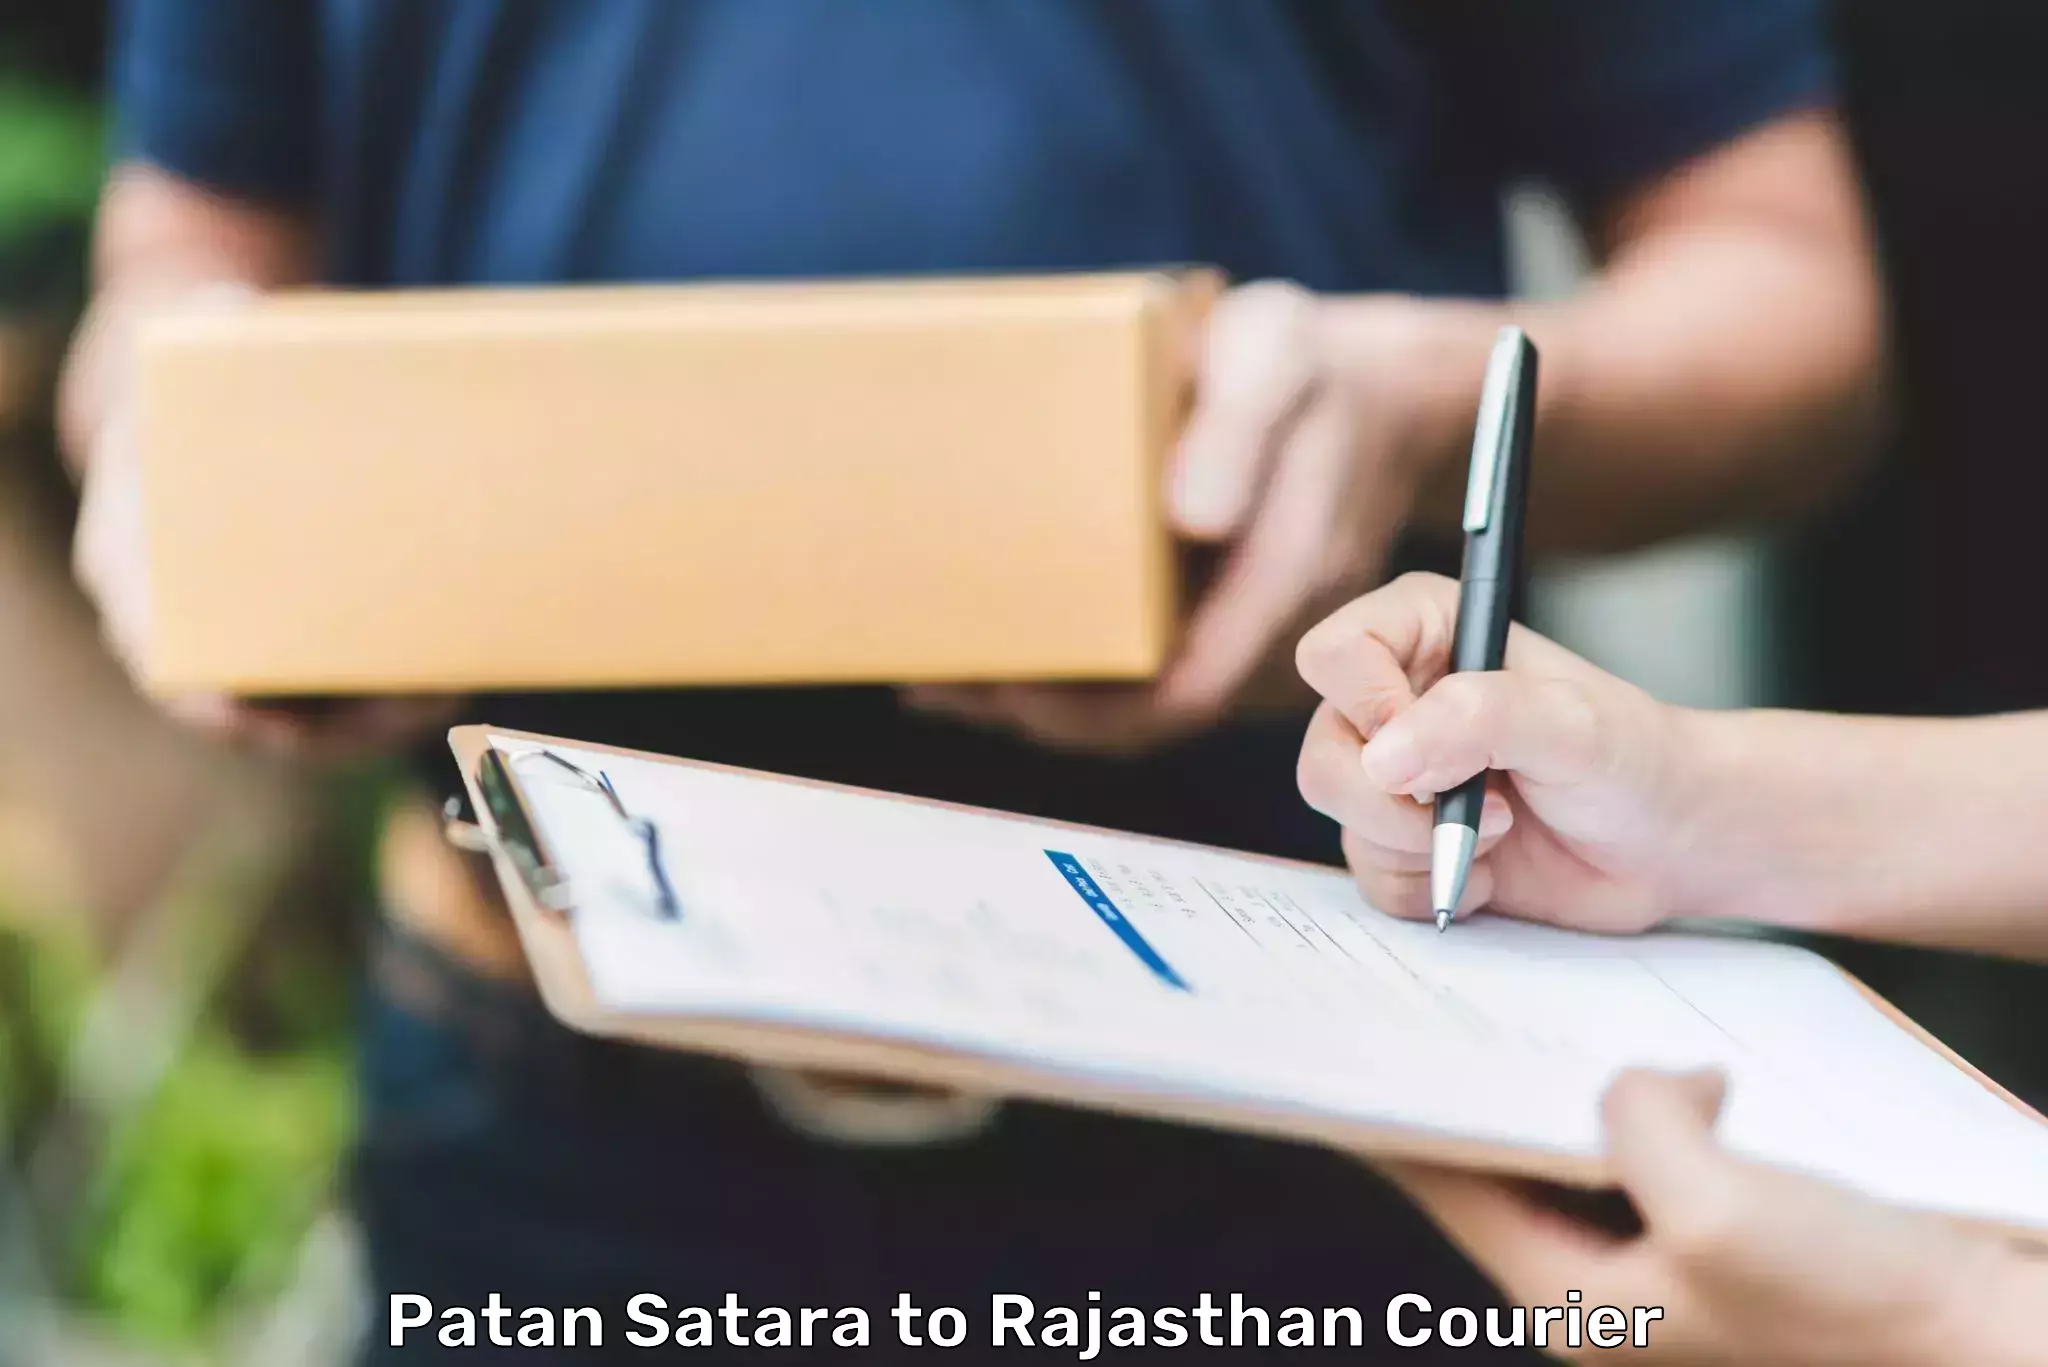 Digital courier platforms Patan Satara to Hindaun